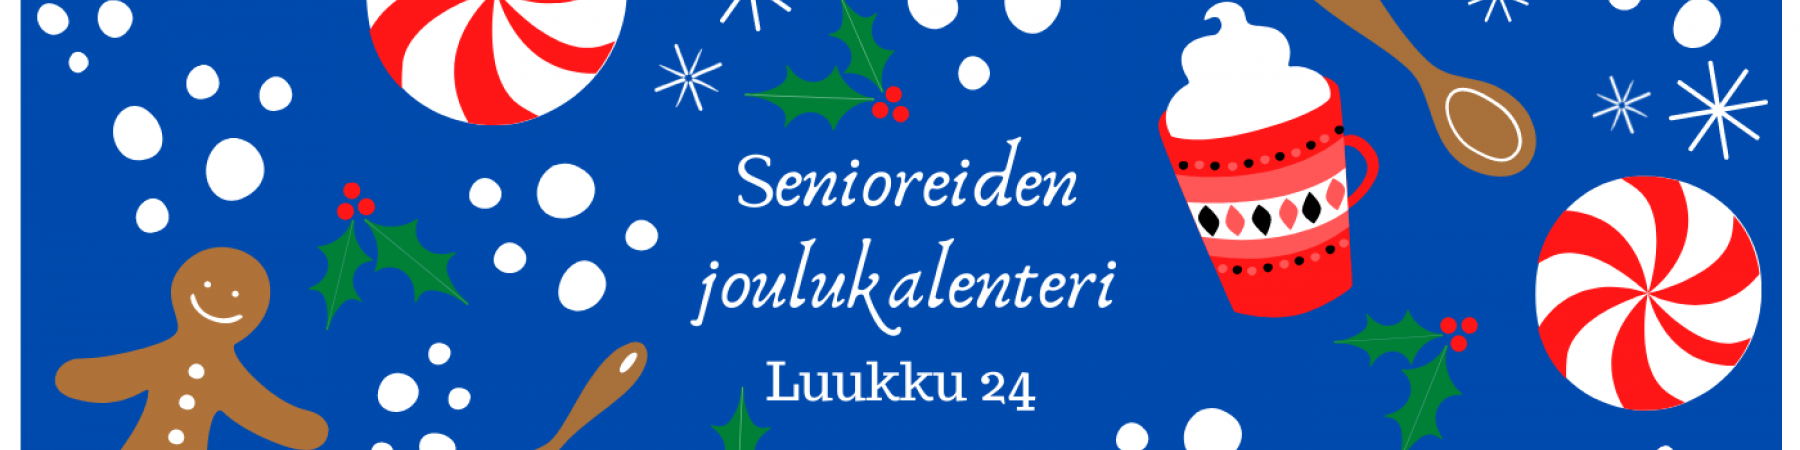 Senioreiden joulukalenterin luukku 24 on avattu!